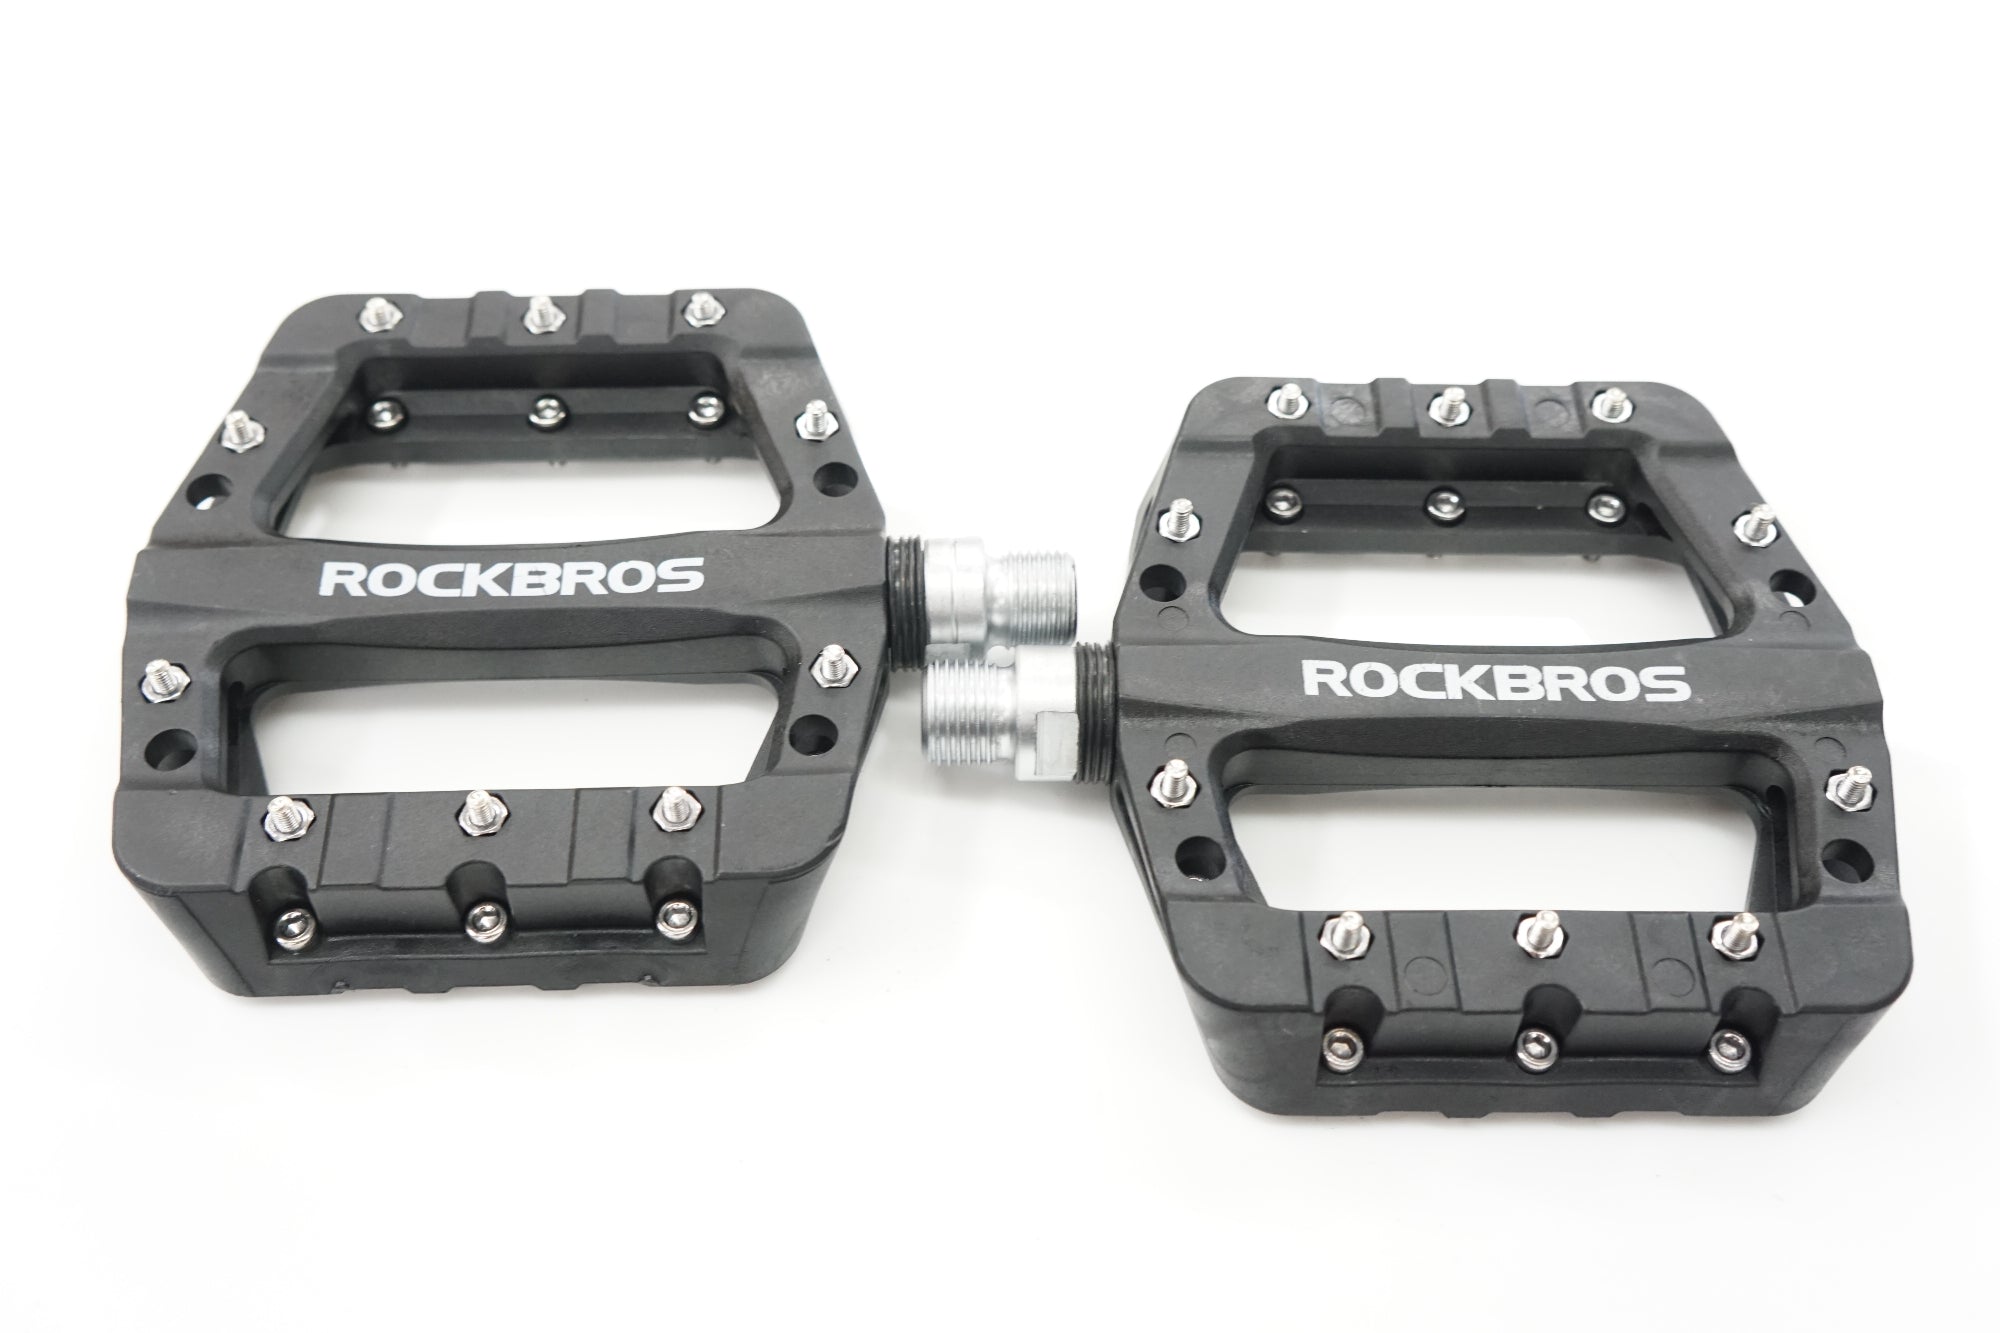 ROCKBROS 「ロックブロス」 ペダル / バイチャリ浦和ベース